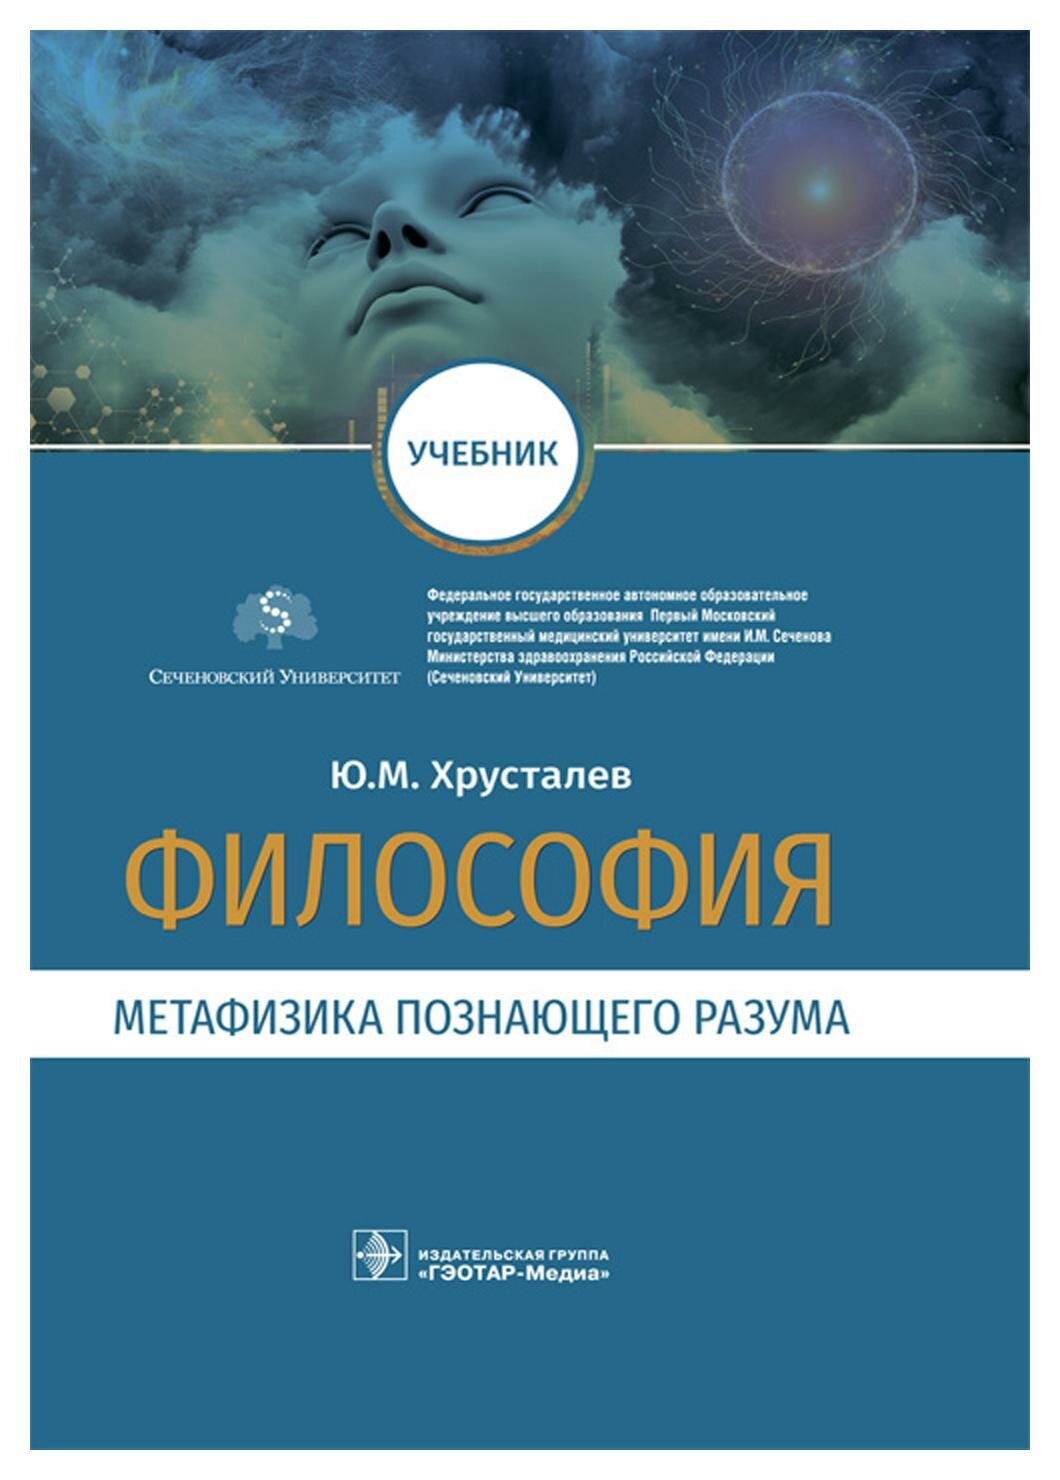 Уценка Философия (метафизика познающего разума): учебник. Хрусталев Ю. М. гэотар-медиа